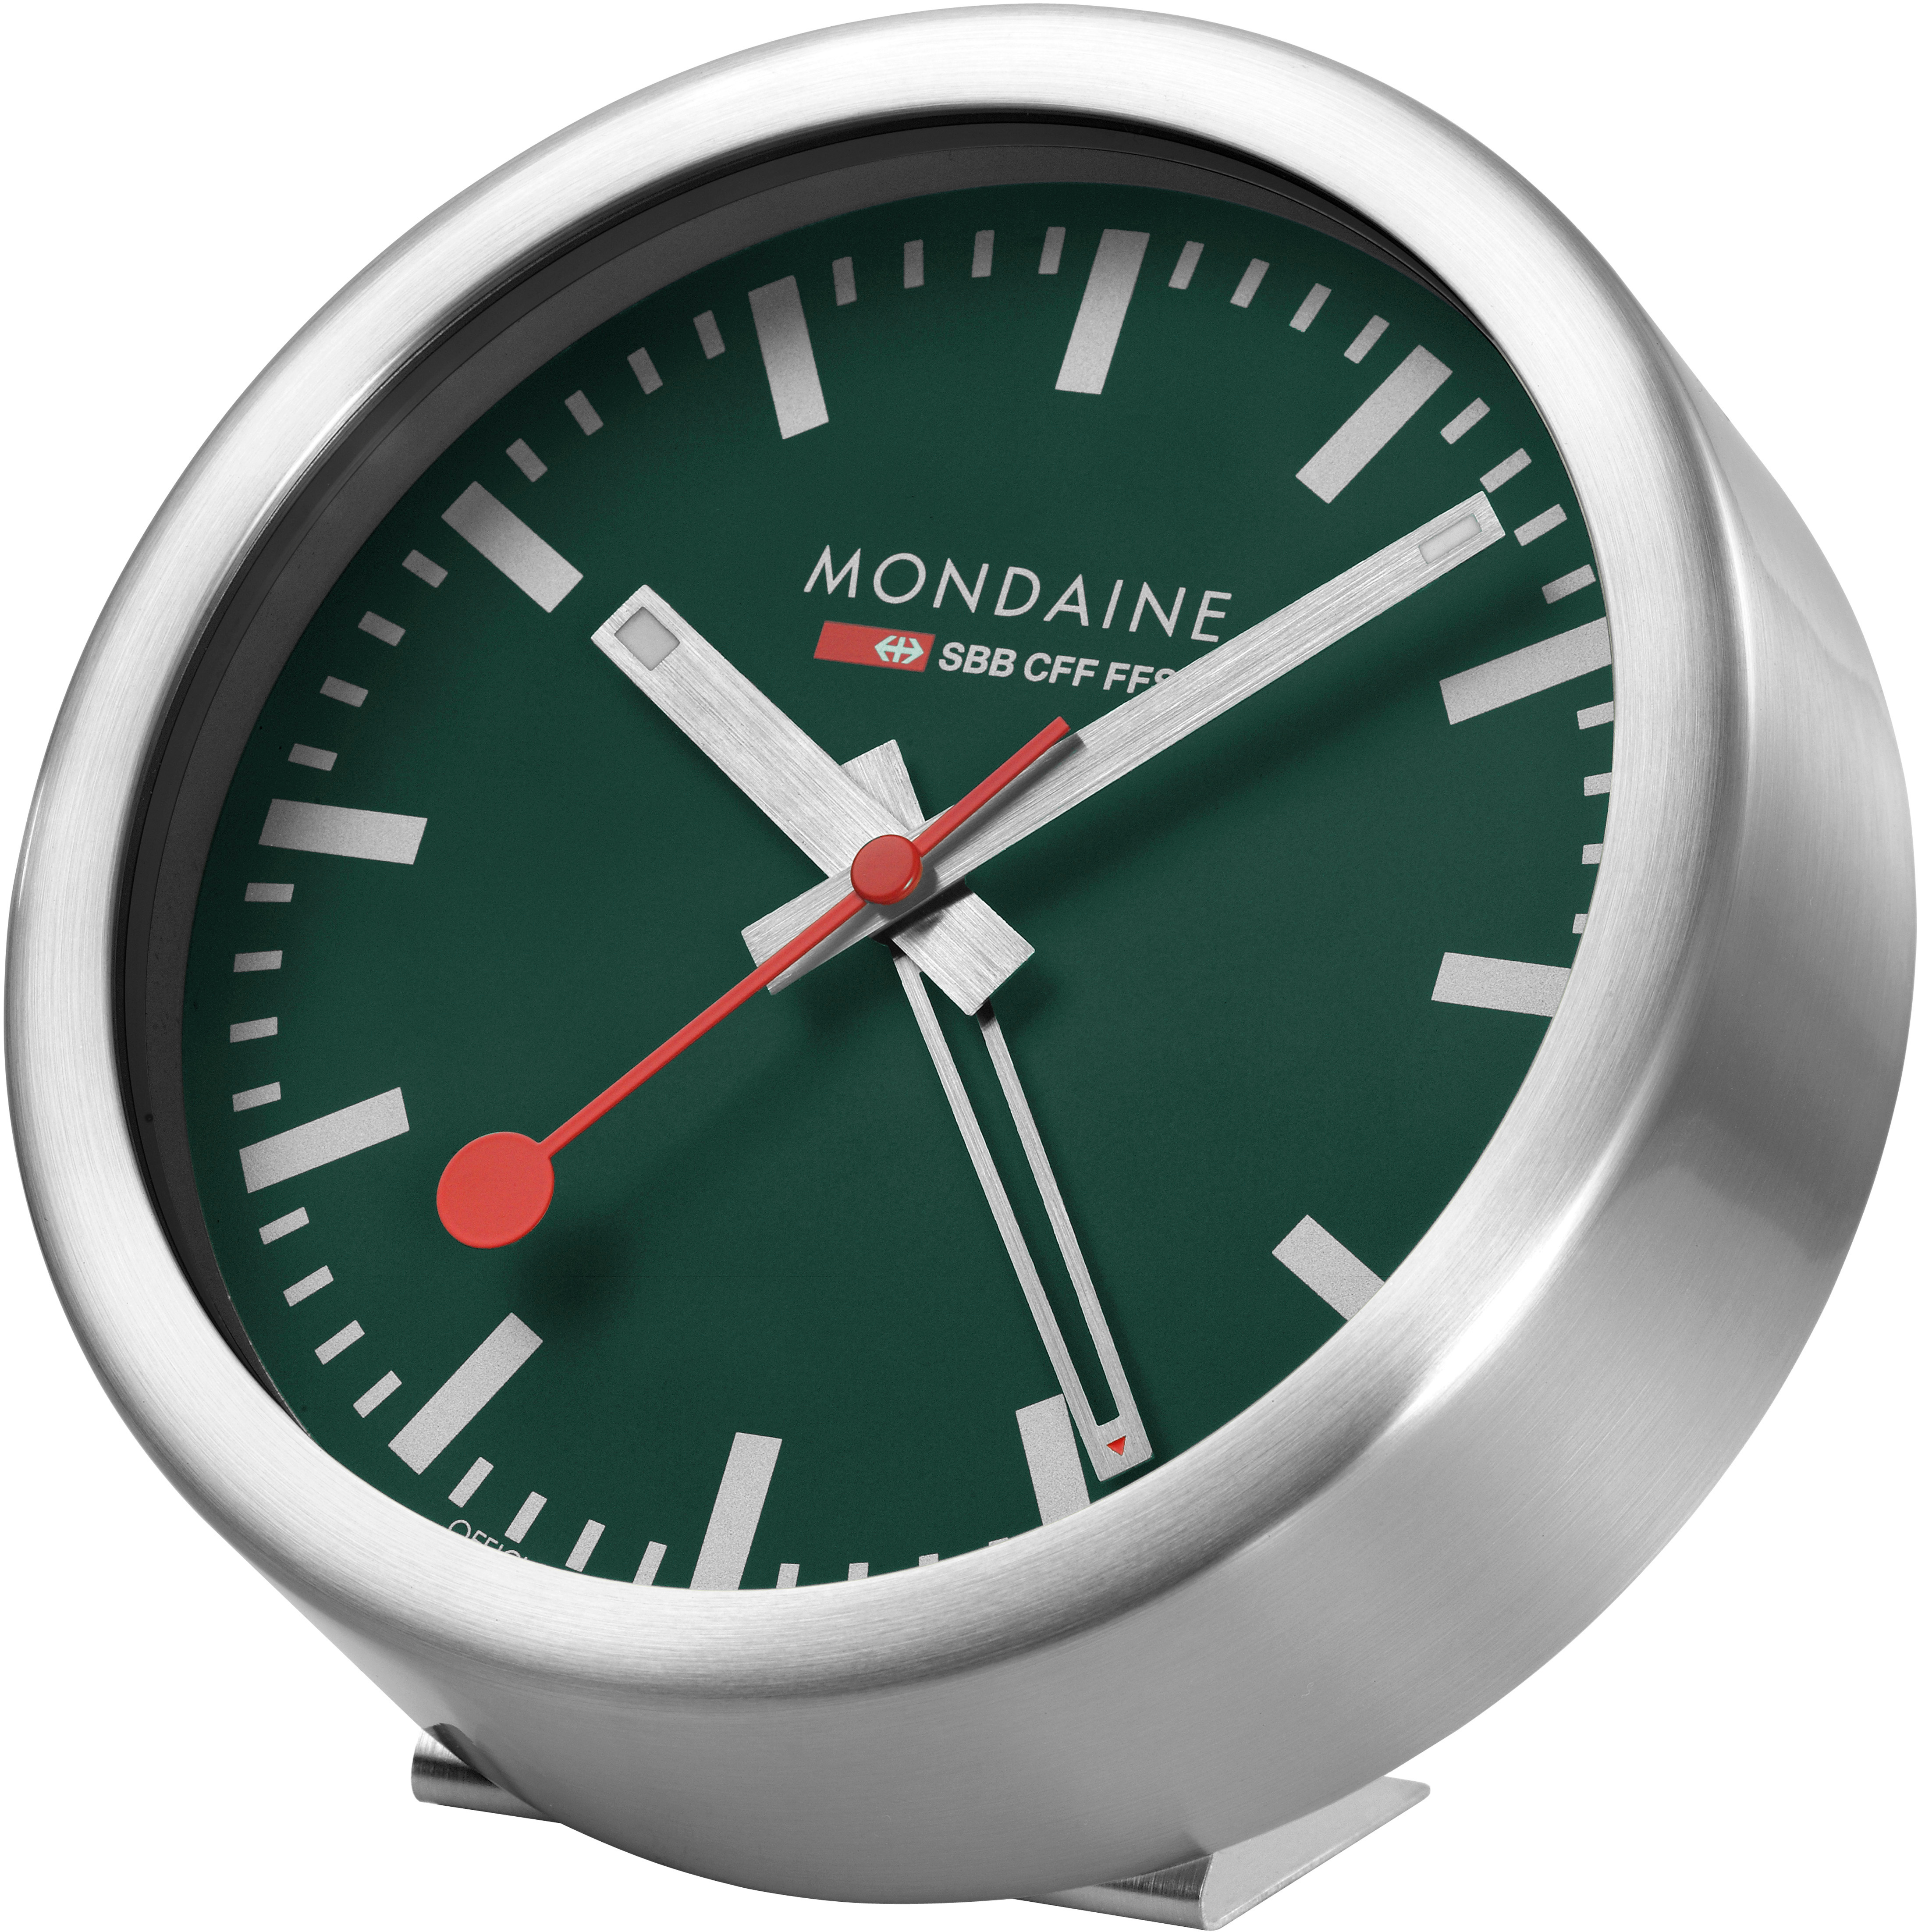 MONDAINE Mur / Horloge de table 125mm A997.66SBV.1 vert, réveil vert, réveil